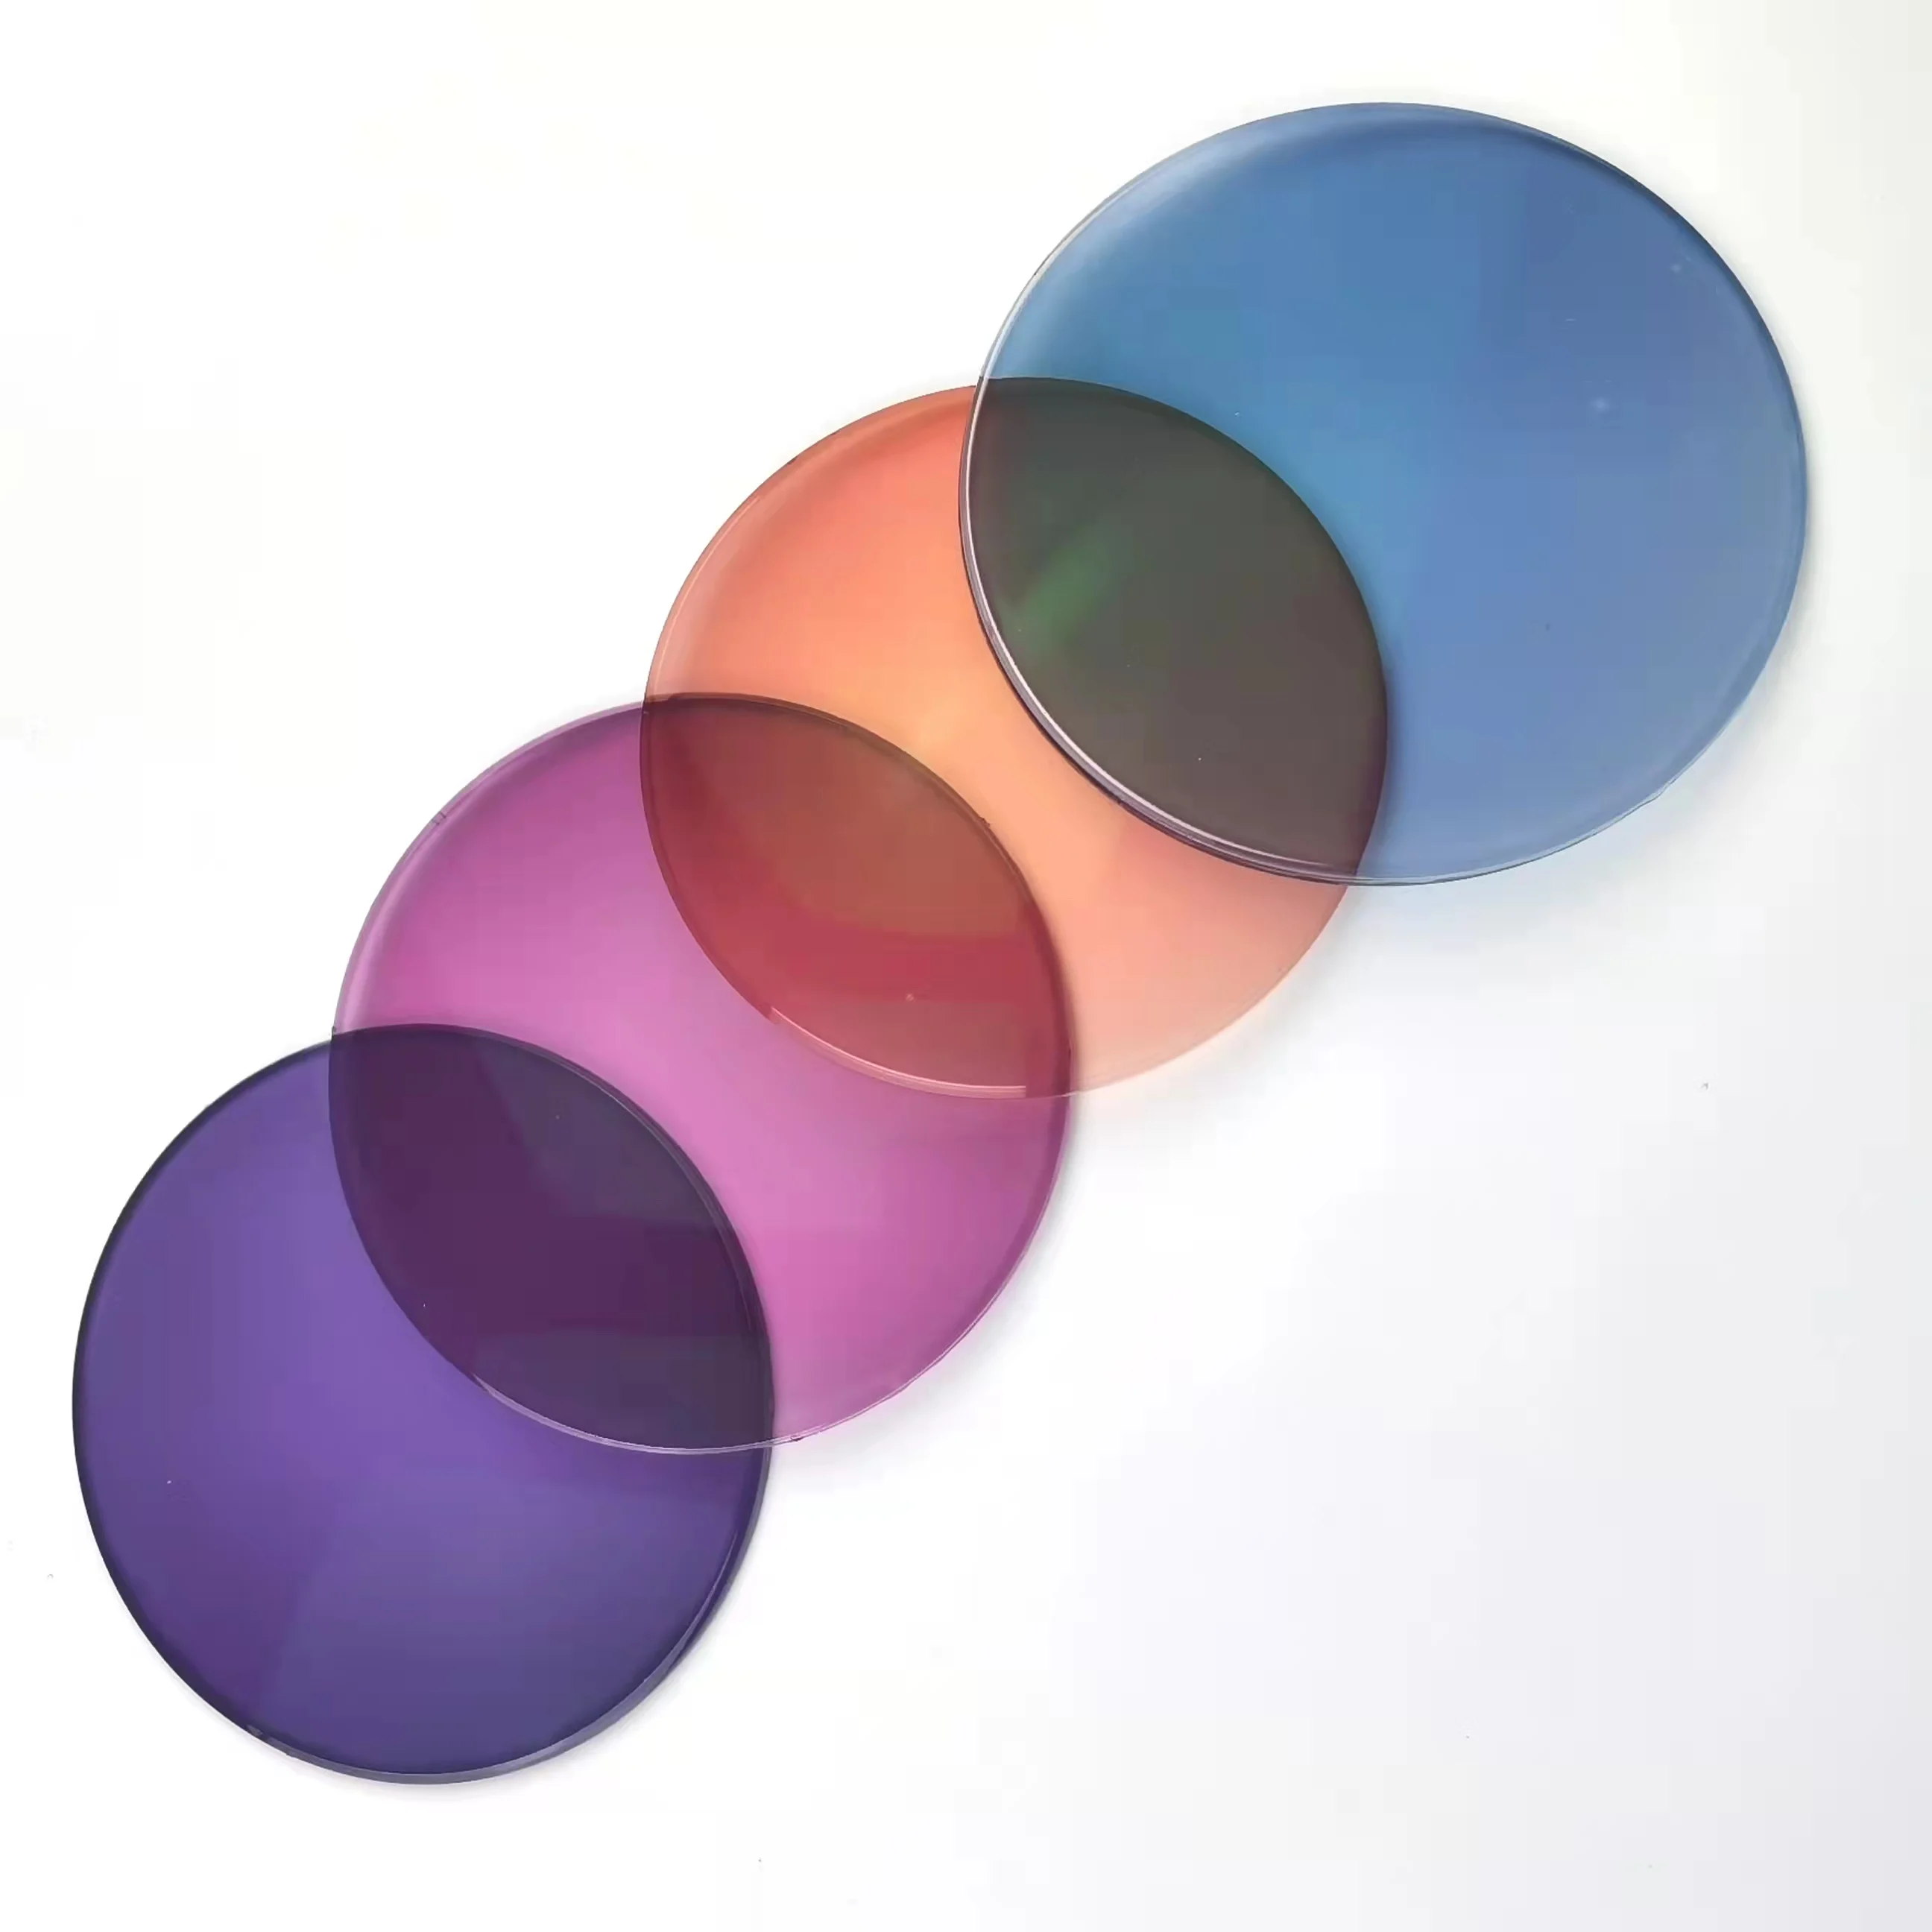 Cr39 1,56-gafas Ópticas Fotocromáticas,Color Rosa/morado/azul/naranja - Foto De Rosa/púrpura/azul/naranja De La Lente,Fotocromáticos Gafas Product on